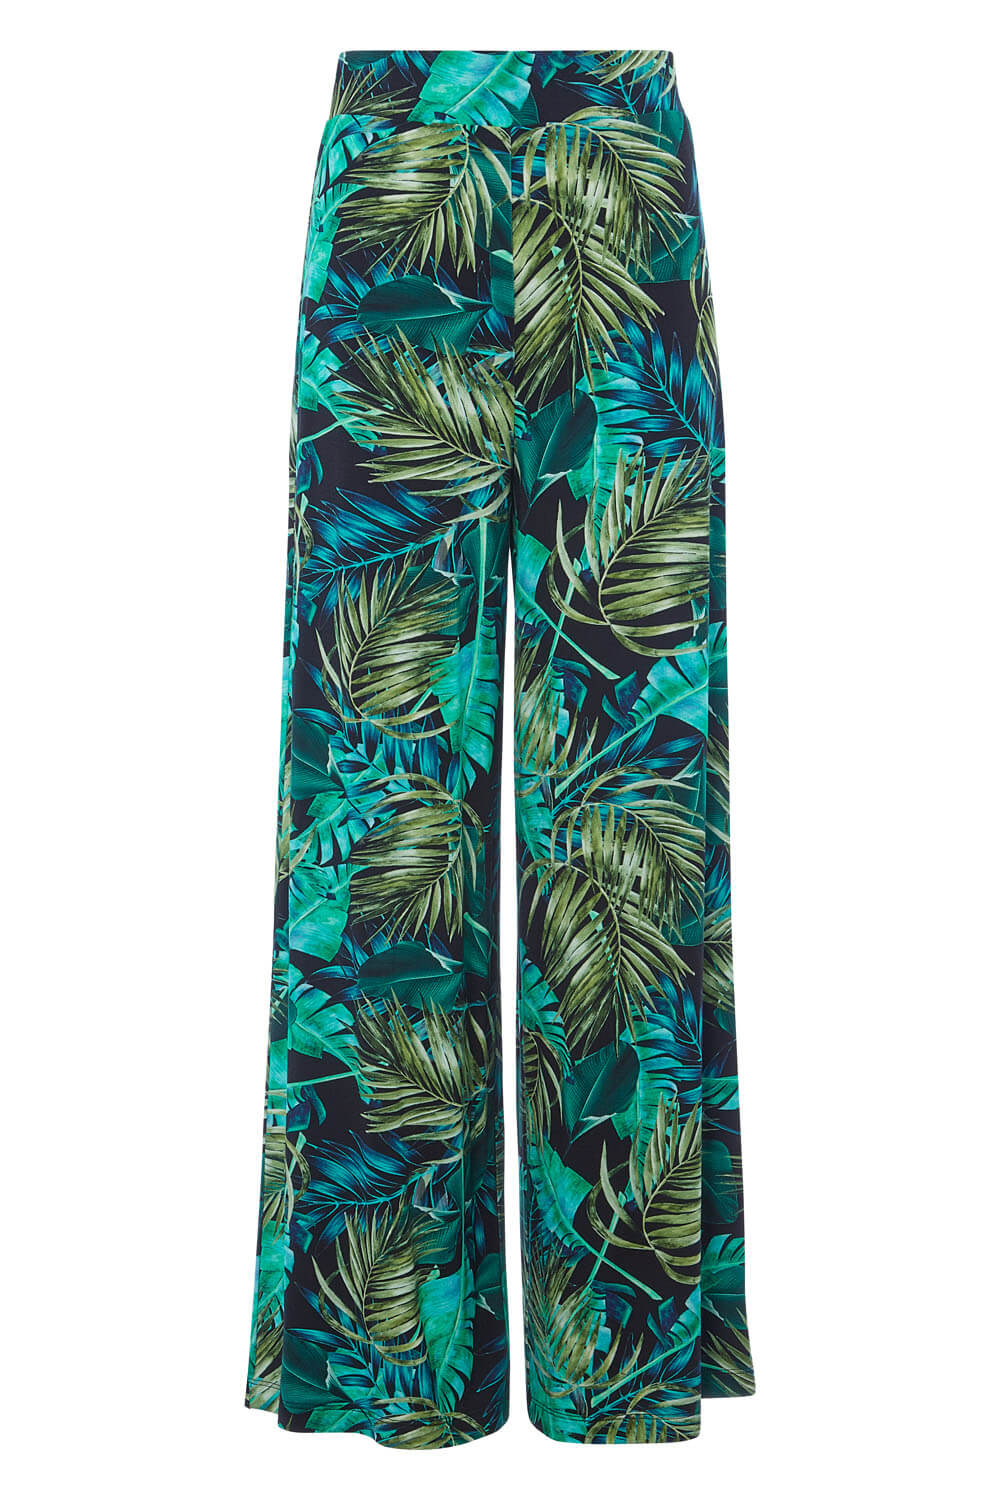 Tropical Print Trouser in Green - Roman Originals UK